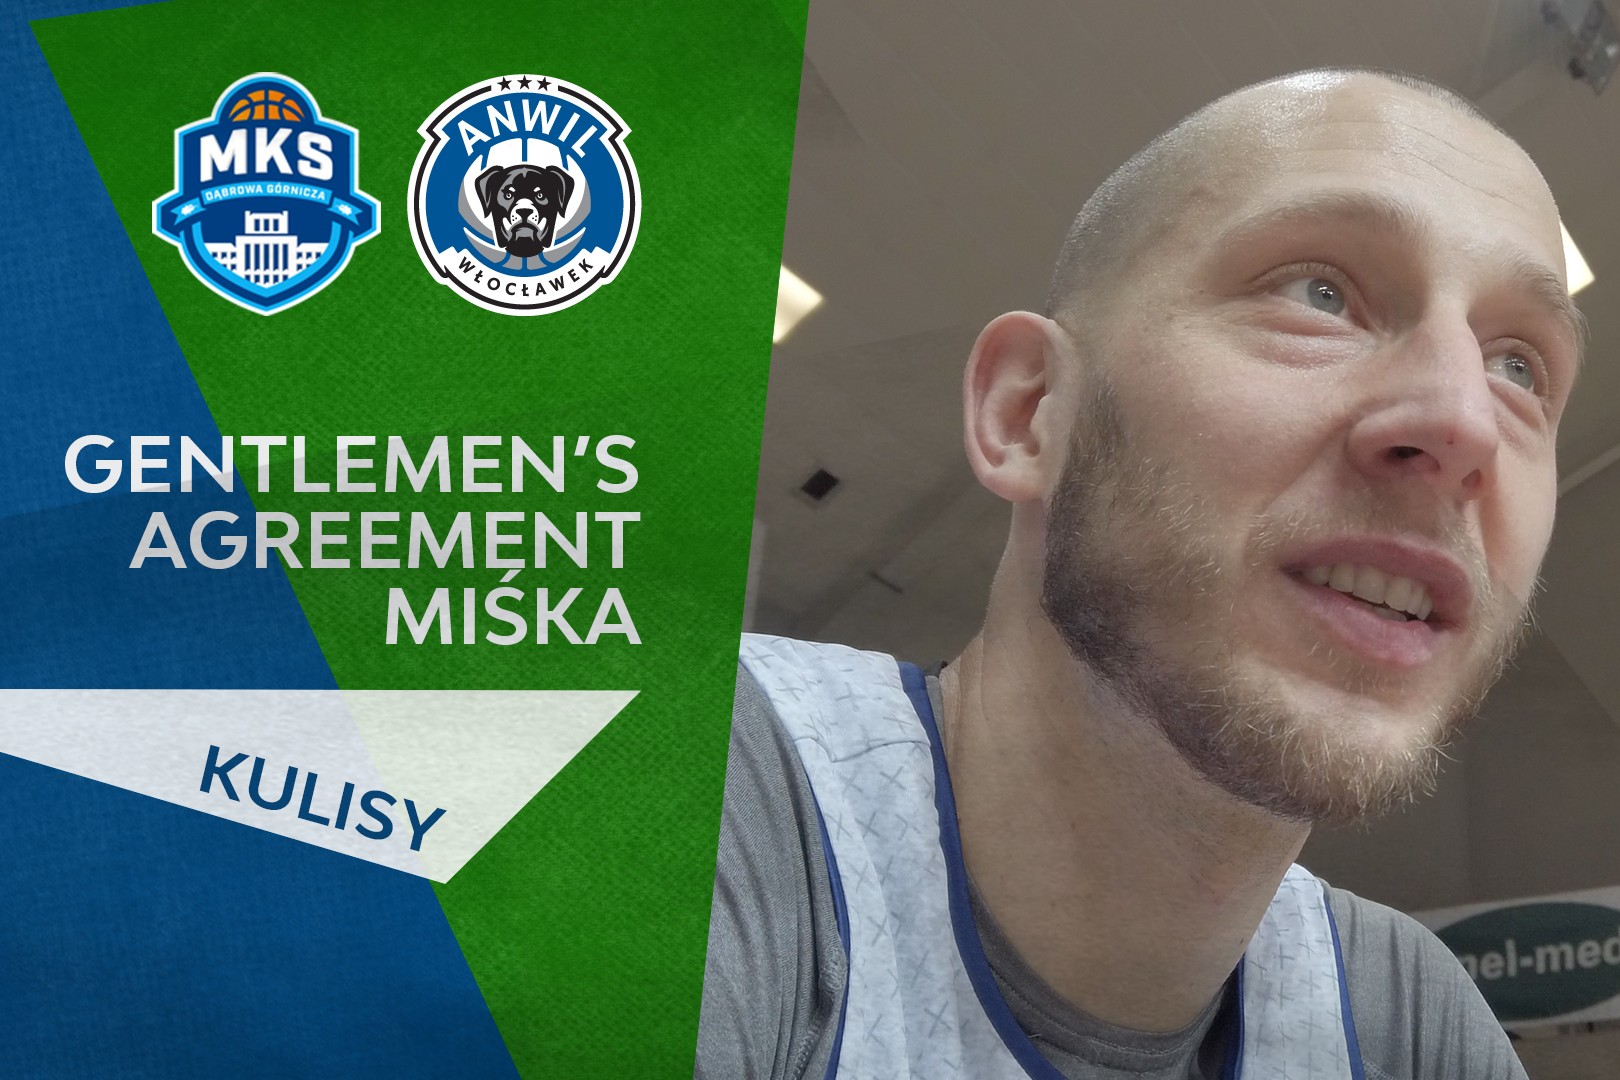 KULISY | Gentlemen's agreement Miśka